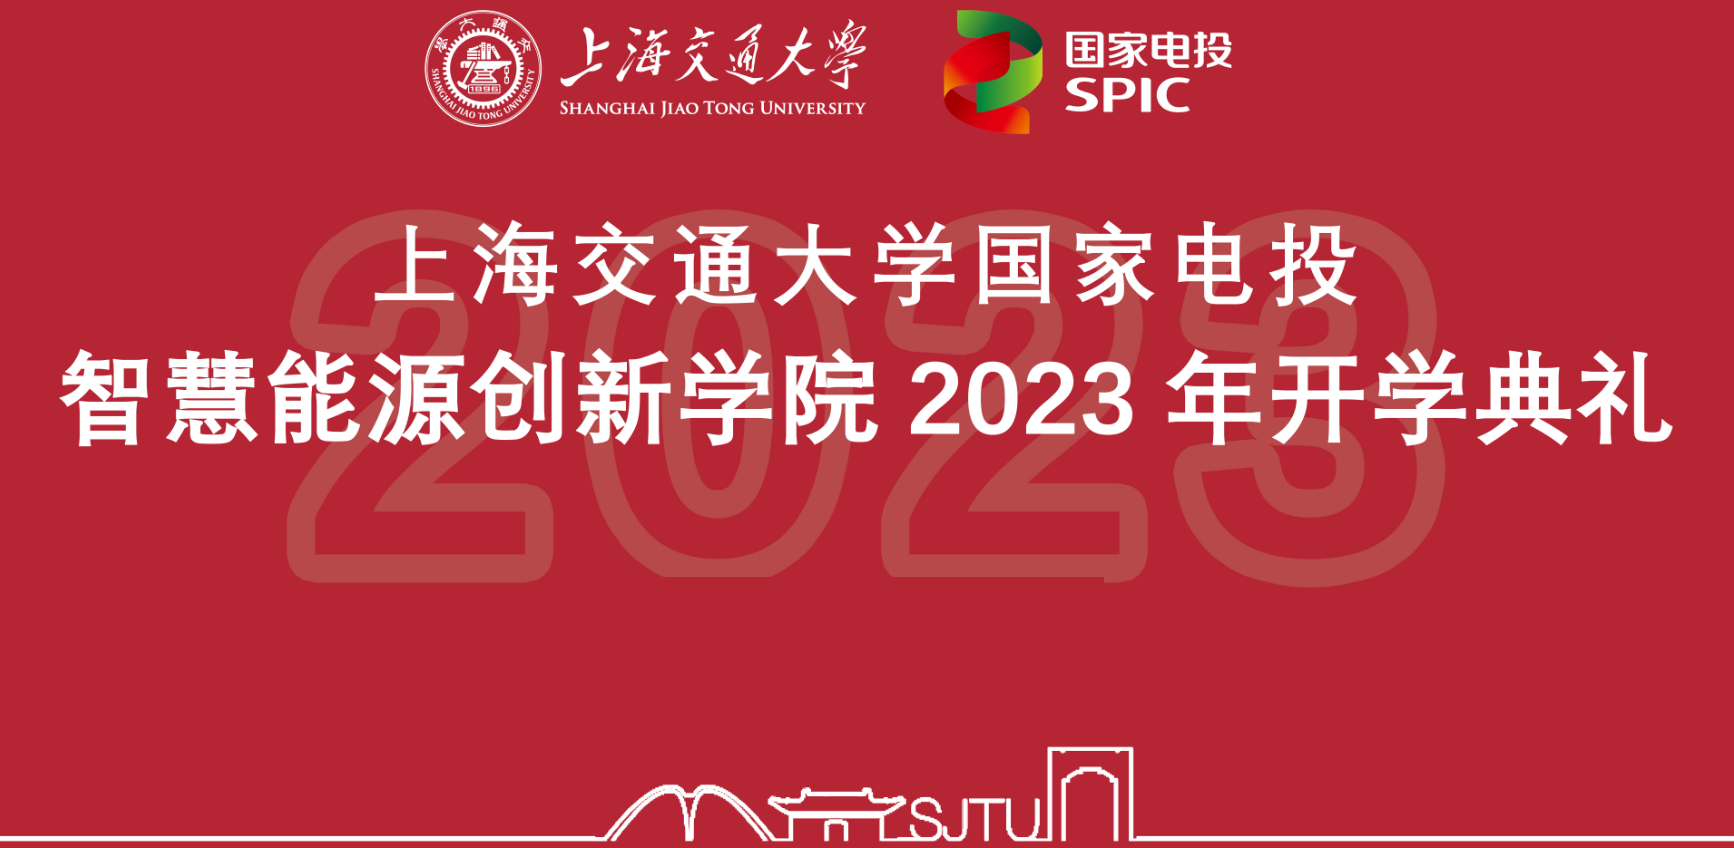 kaiyun体育官方网-ky体育官方平台
2023年开学典礼顺利举行